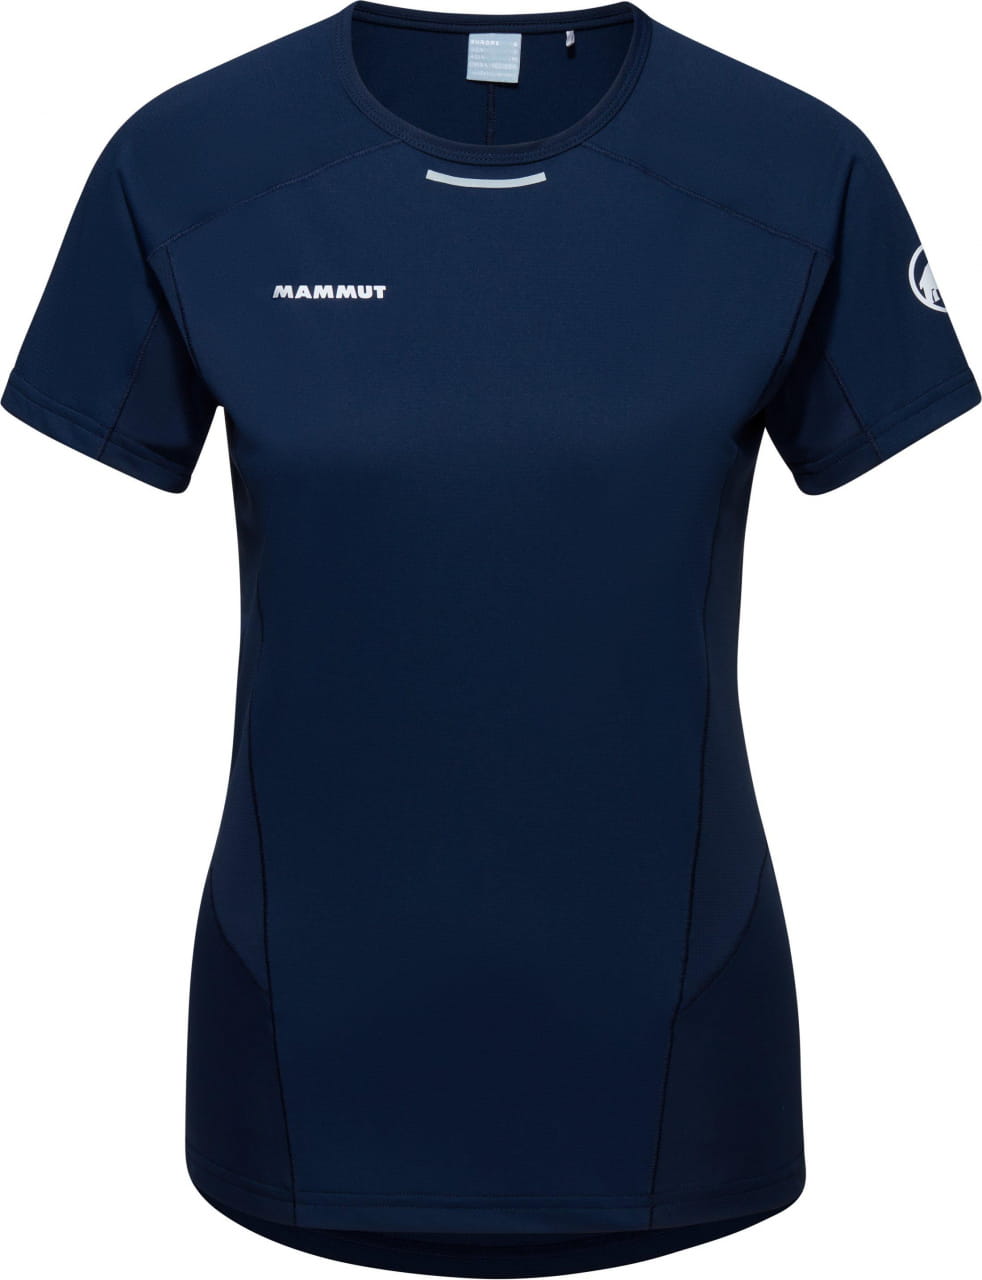 Sporthemd für Frauen Mammut Aenergy FL T-Shirt Women